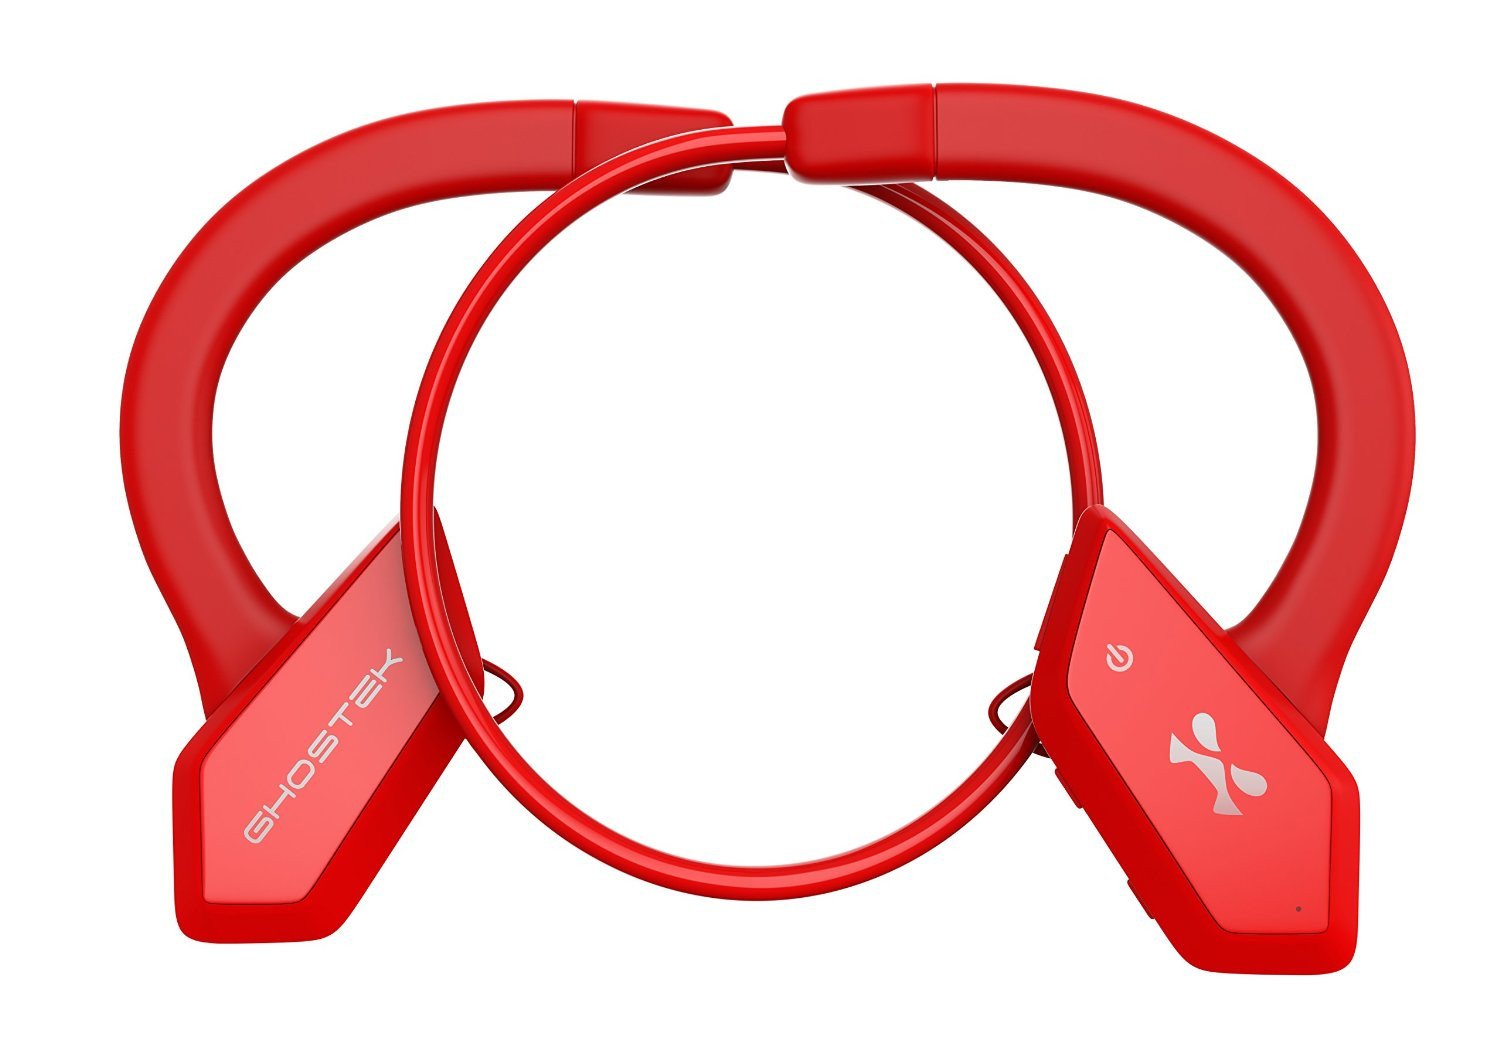 Headphones Bluetooth, Ghostek Earblades Red Sweatproof Bluetooth 4.1 Headphones Water Resistant